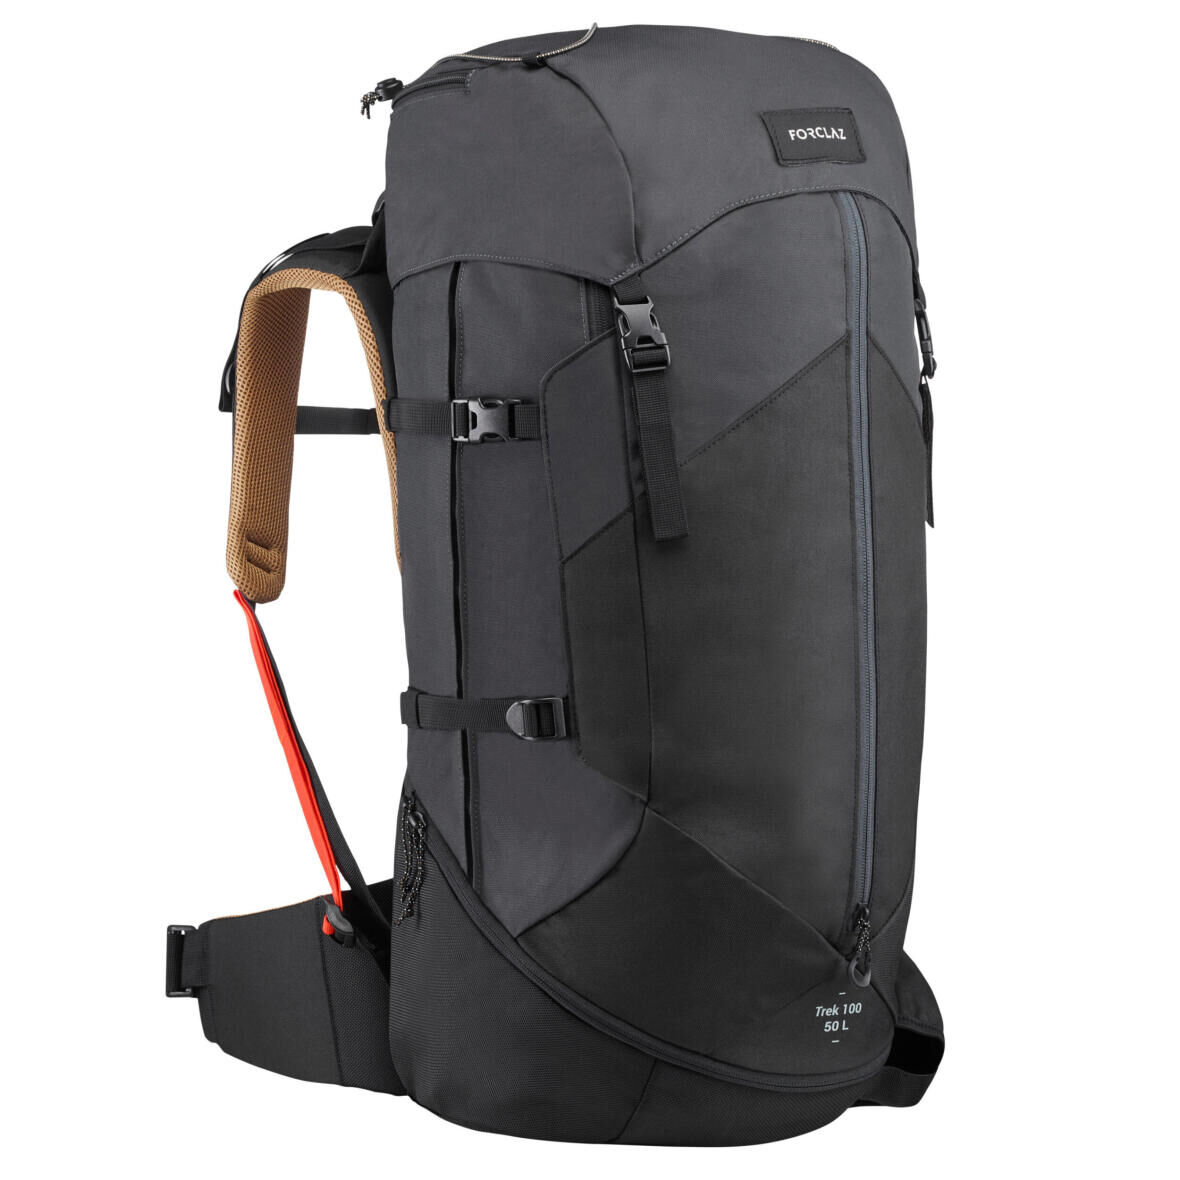 Repair your trekking backpack yourself